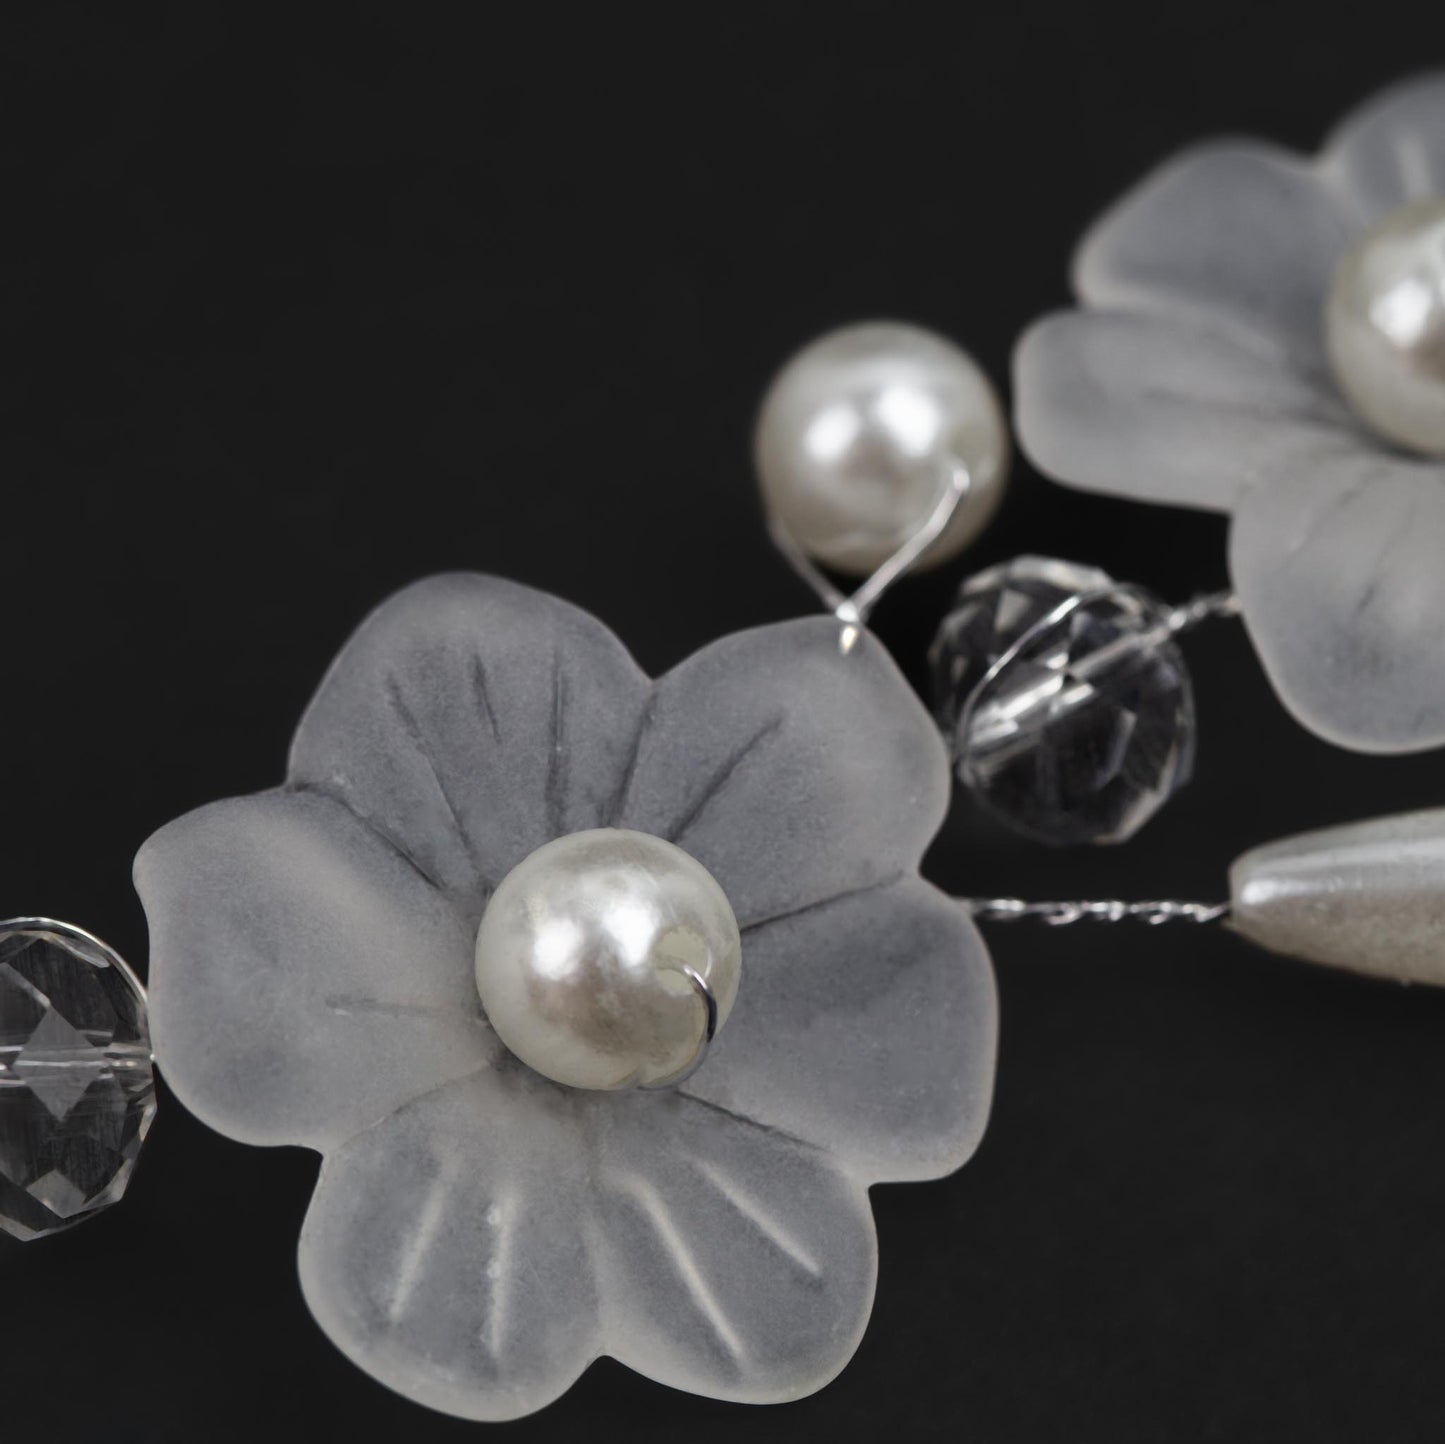 Diademă elegantă maleabilă cu pietre, perle, flori - Argintiu